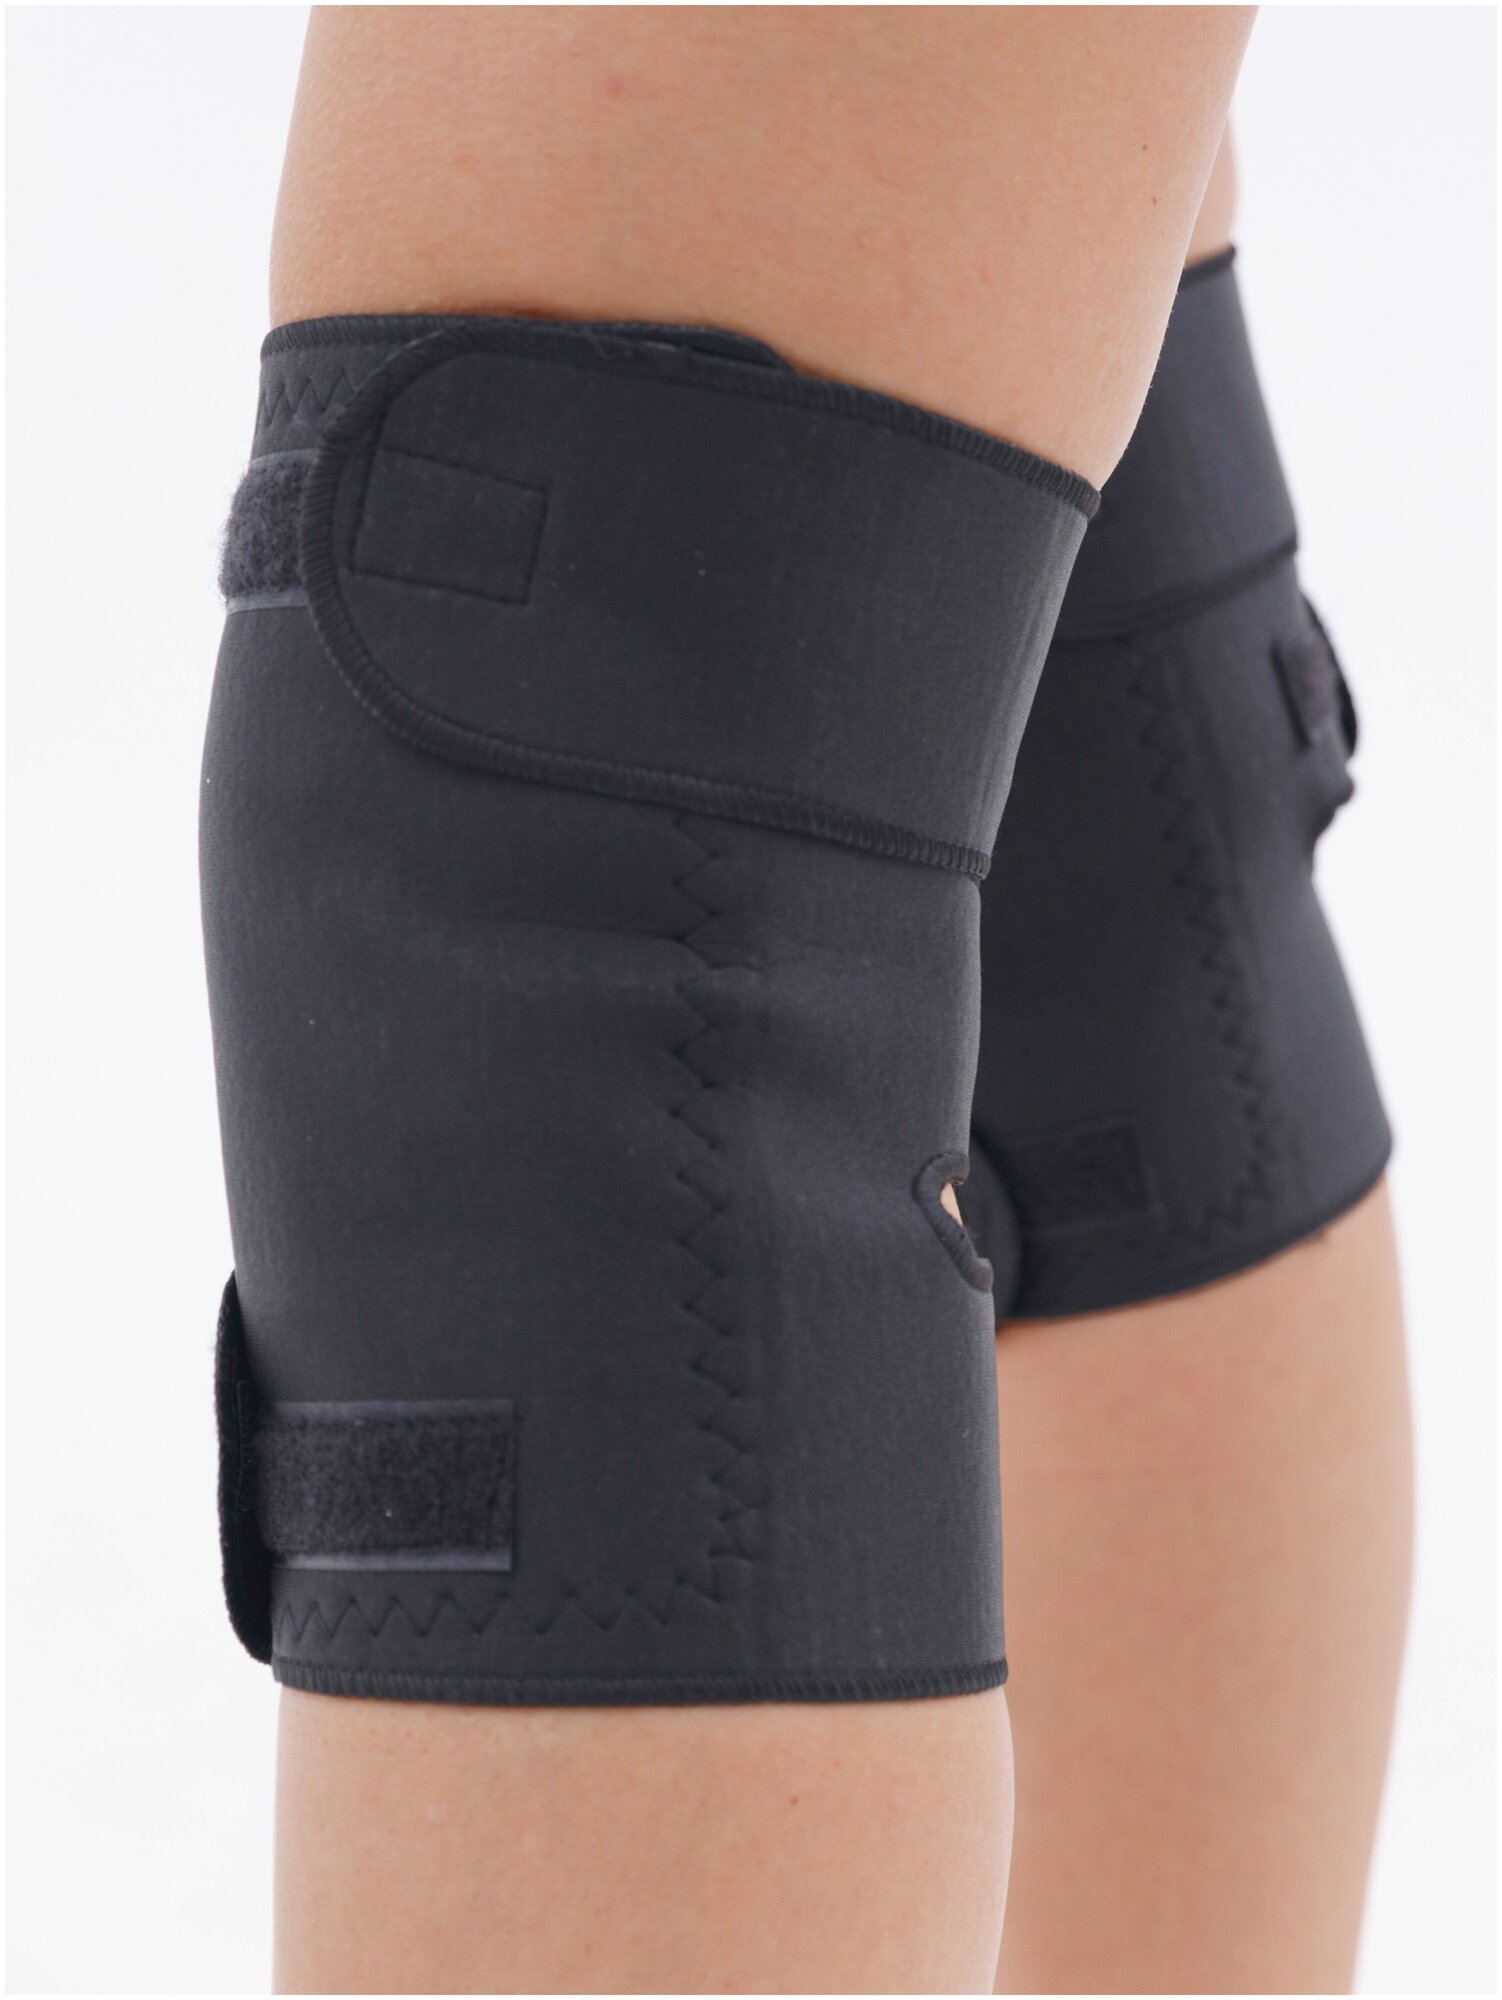 Турмалиновый бандаж на колено MyBalance, наколенники с турмалином черный